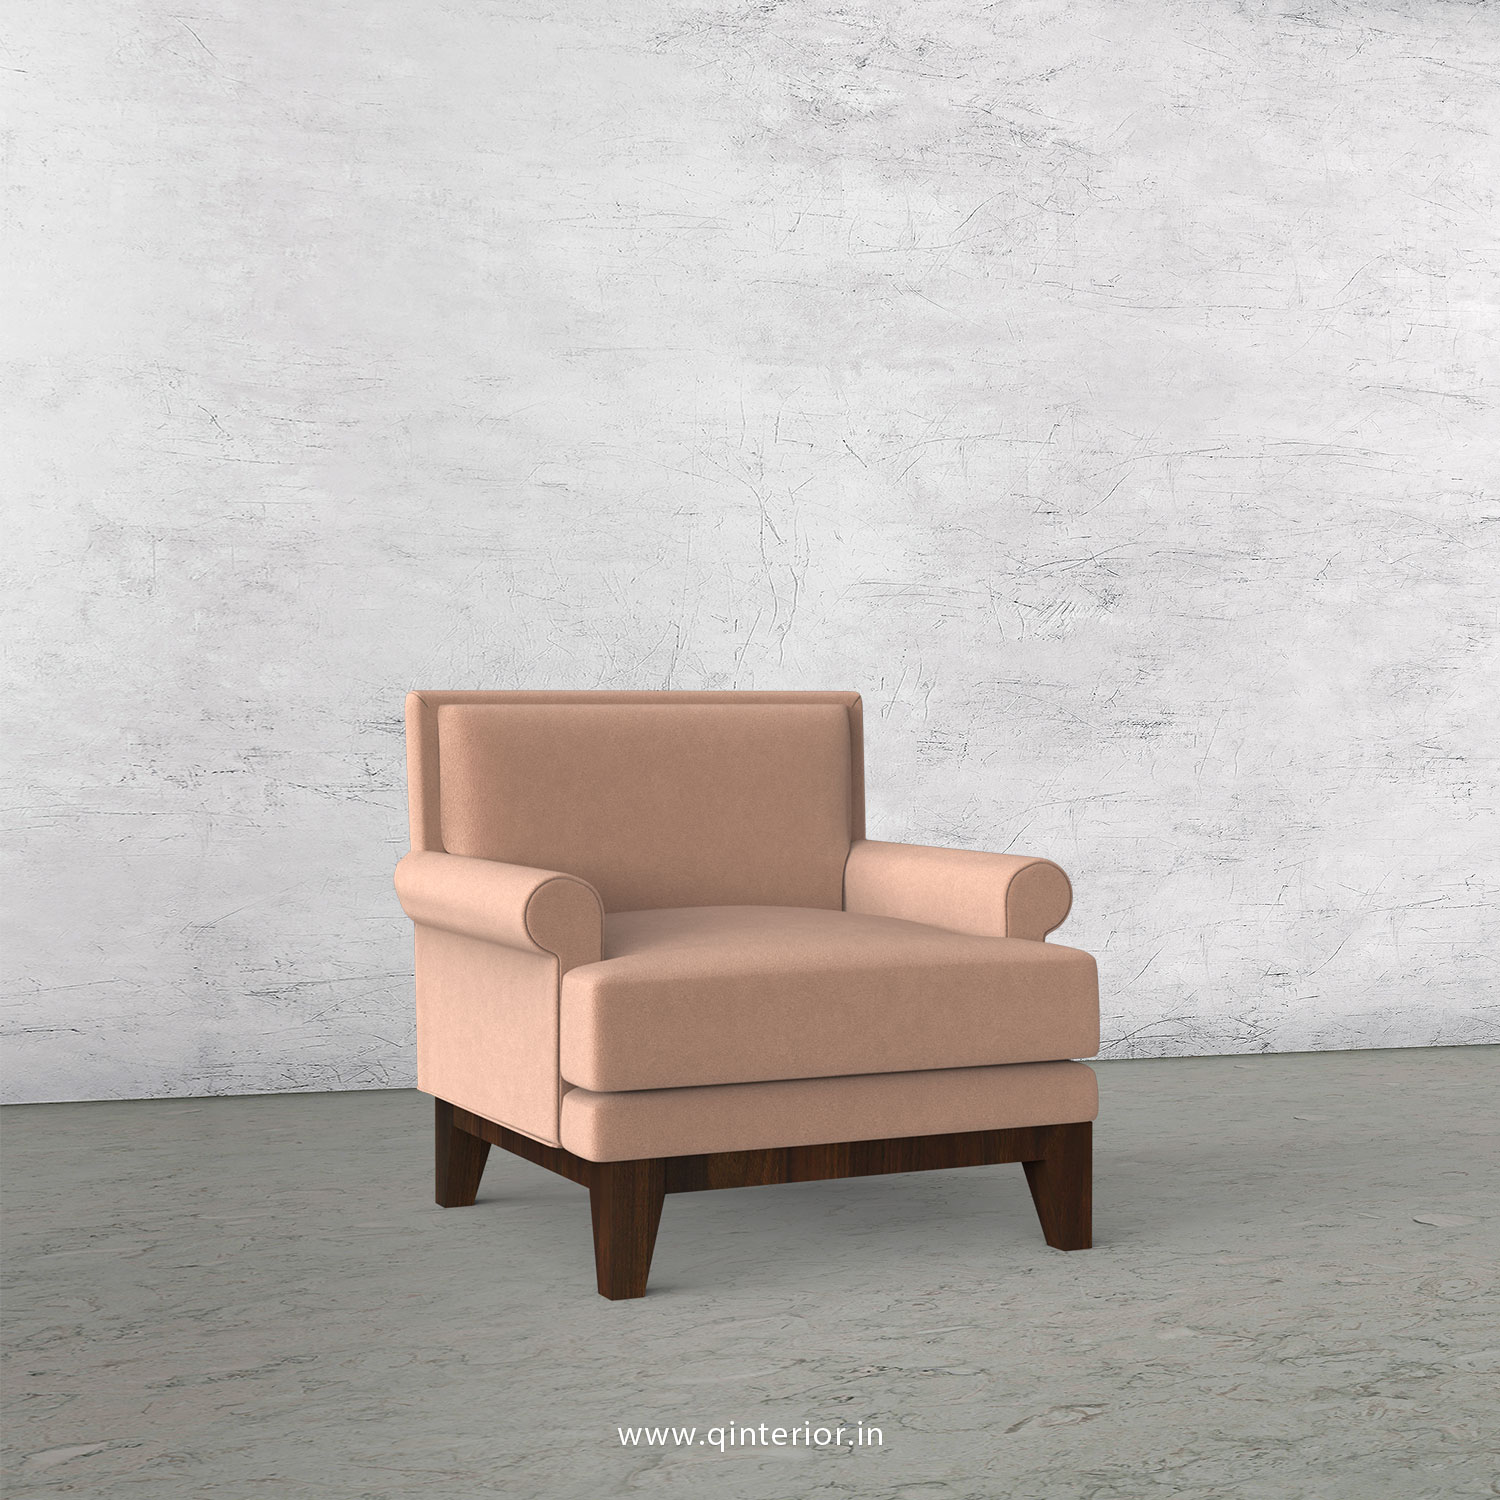 Aviana 1 Seater Sofa in Velvet Fabric - SFA001 VL16